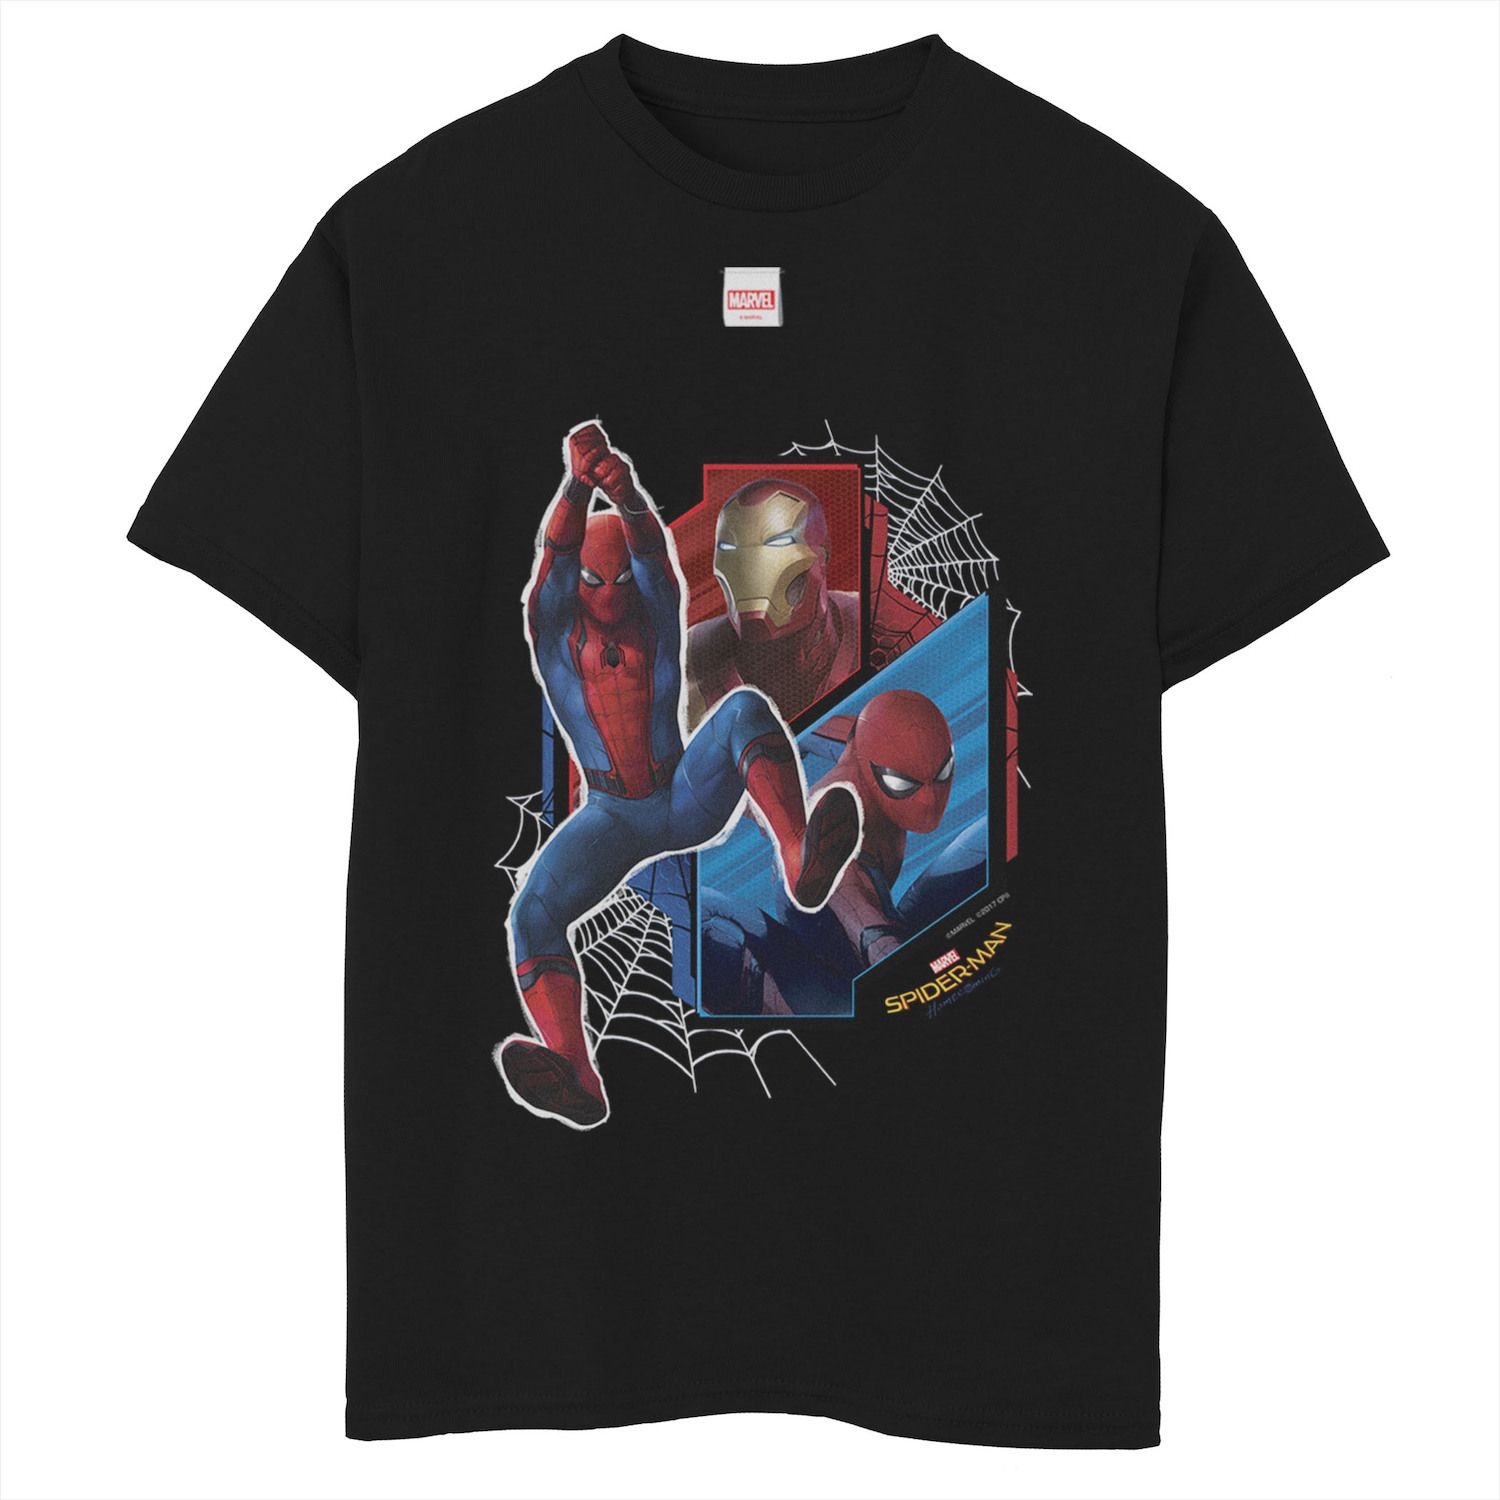 Футболка с рисунком «Человек-паук» Marvel для мальчиков 8–20 лет, команда «Железный человек» Marvel футболка с рисунком комиксов человек паук marvel для мальчиков 8–20 лет marvel